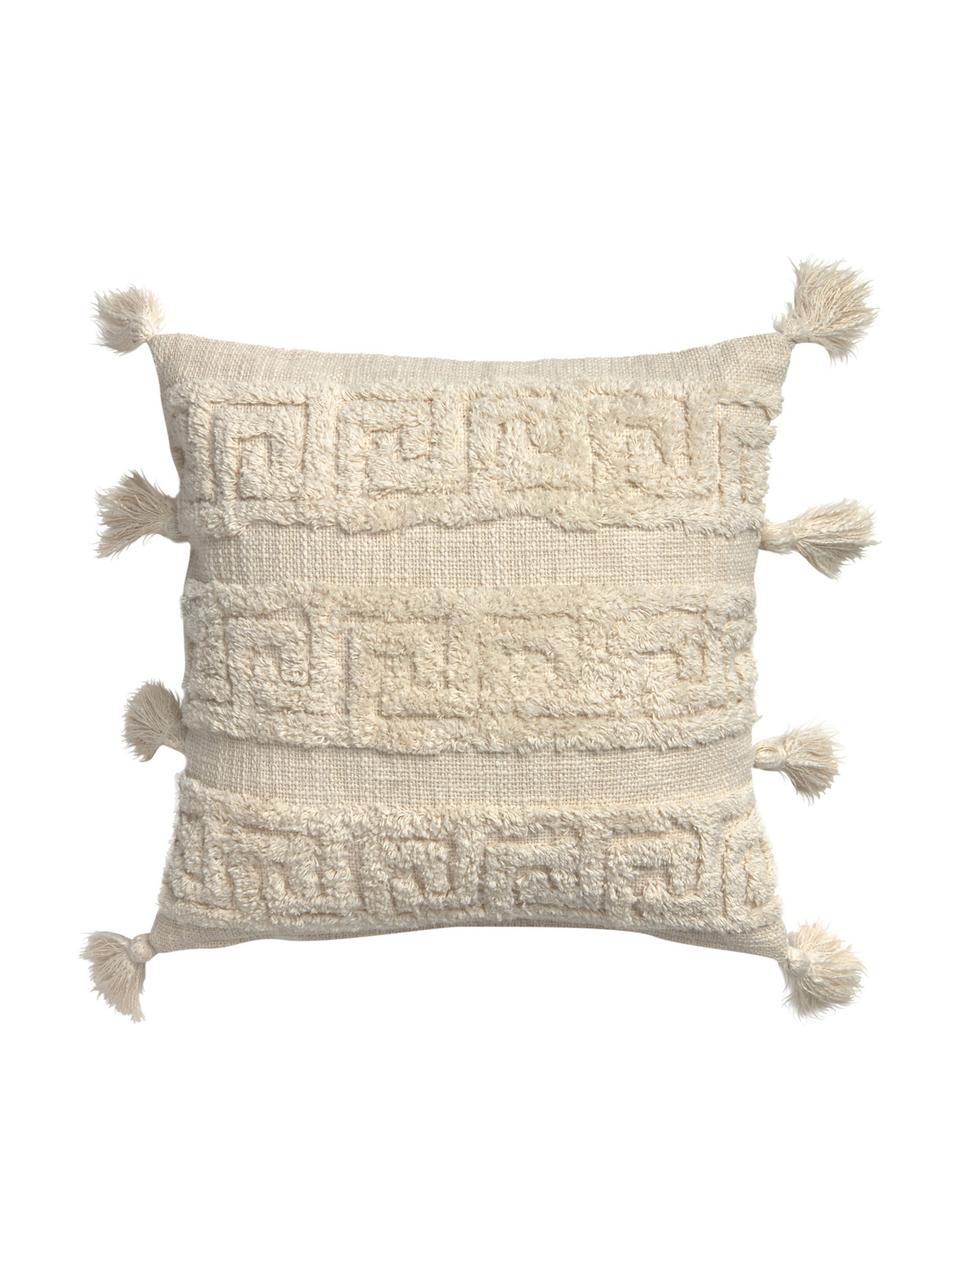 Boho Kissenhülle Hera mit Hoch-Tief-Muster und Quasten, 100% Baumwolle, Cremefarben, 45 x 45 cm